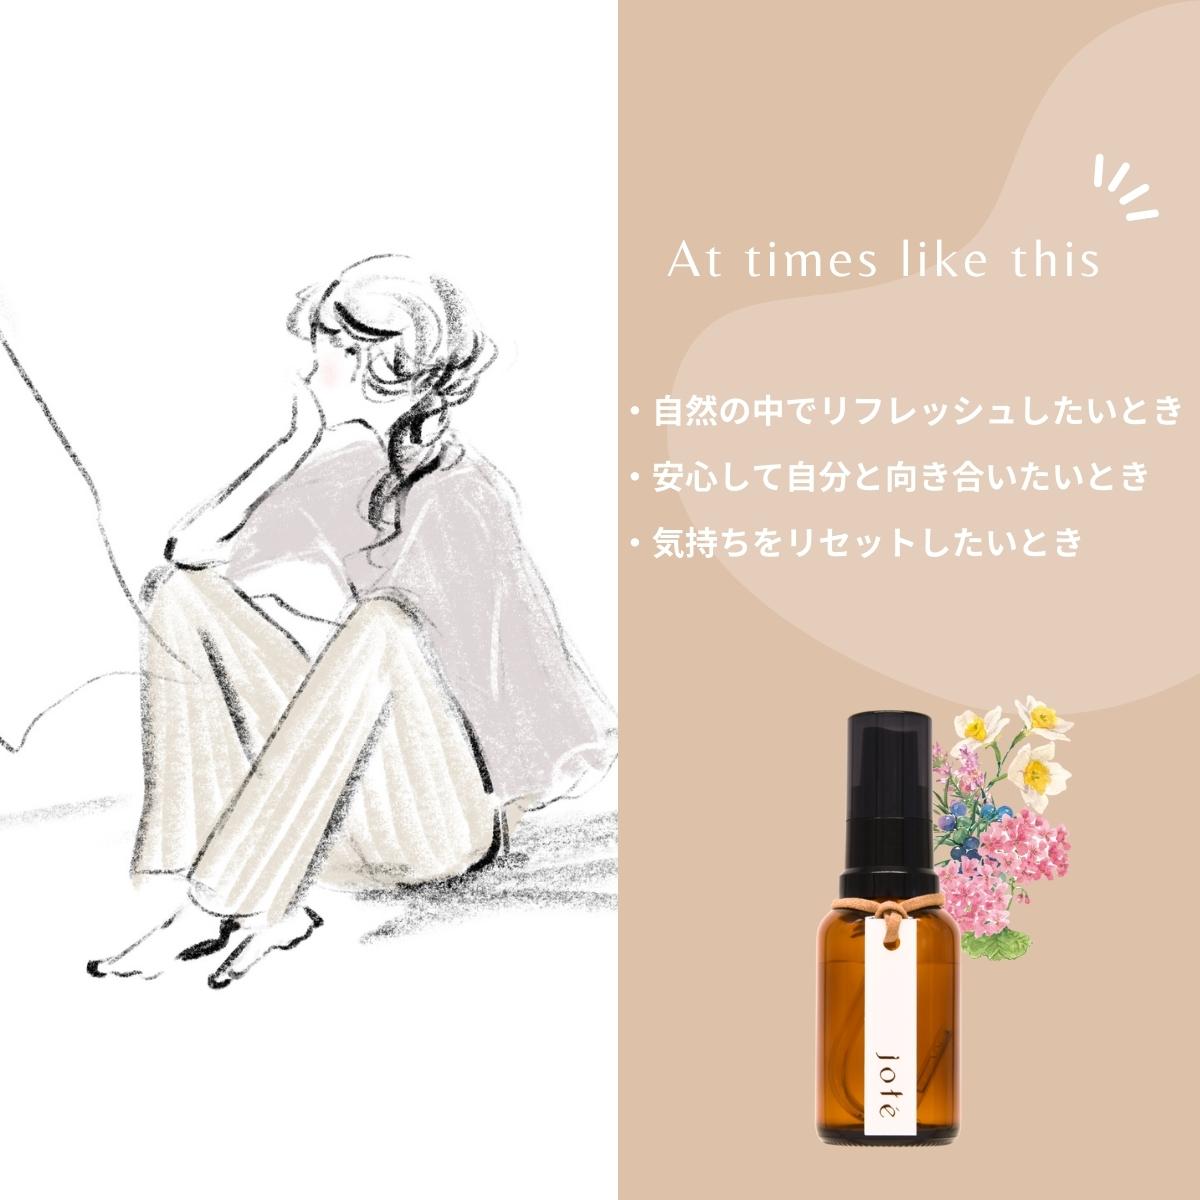 【 Kind set 】Perfume やさしい香りお試し5ml 3本セット